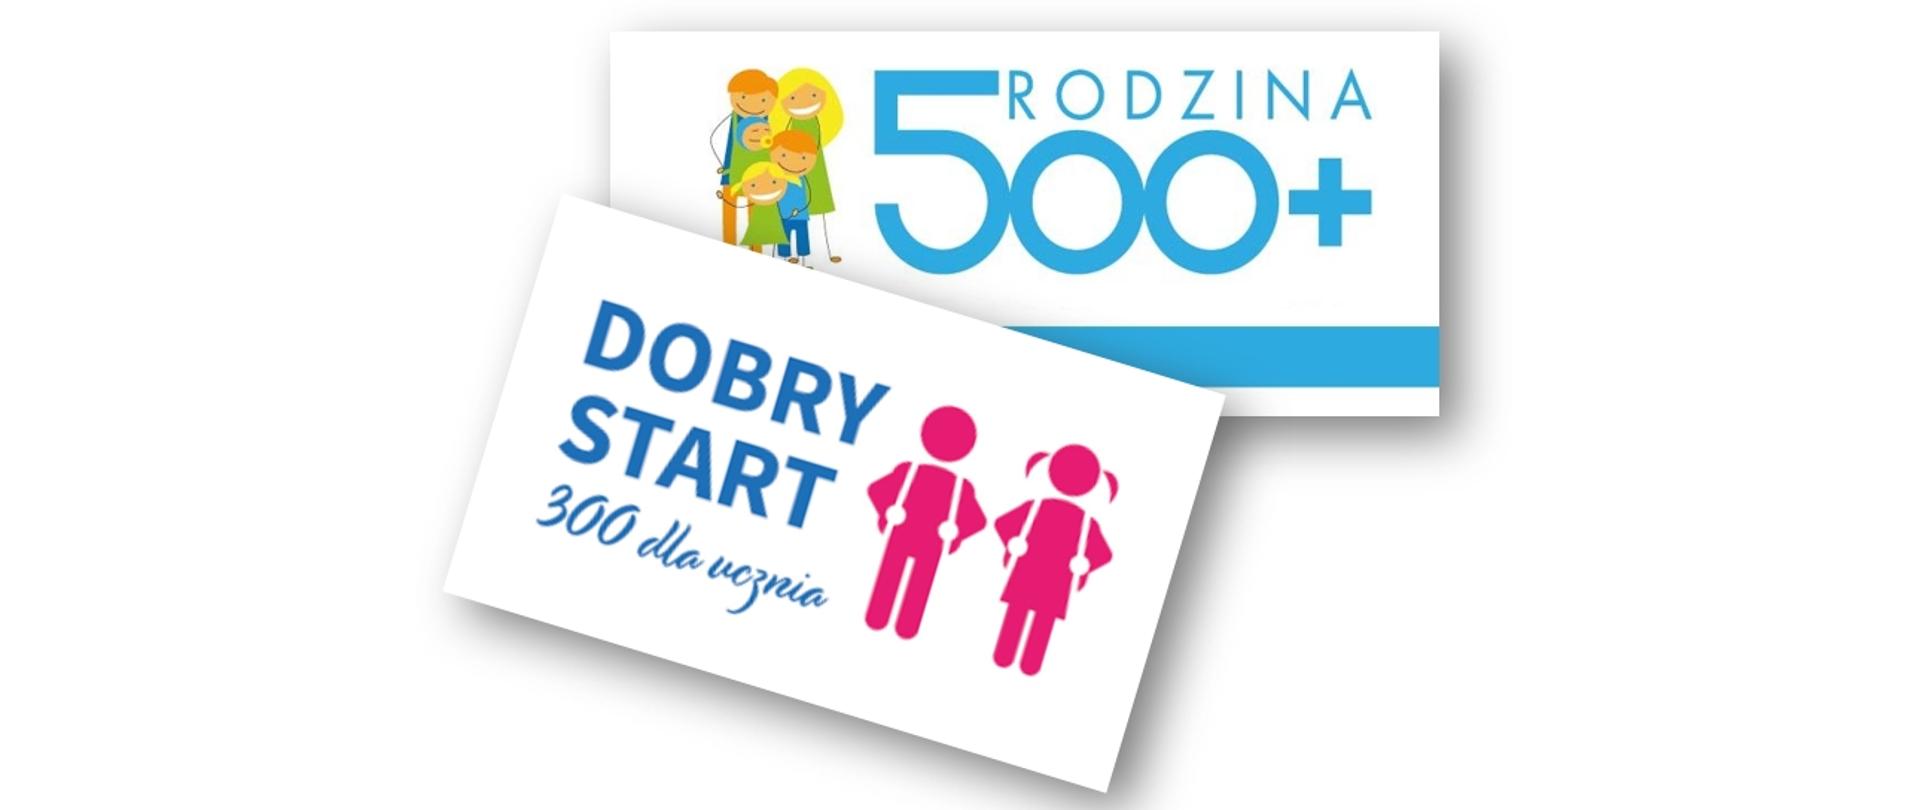 Zdjęcie przedstawia dwie karki z podpisami Dobry Start 300 dla ucznia oraz Rodzina 500+. W obydwu zamieszczone są okolicznościowe rysunki.